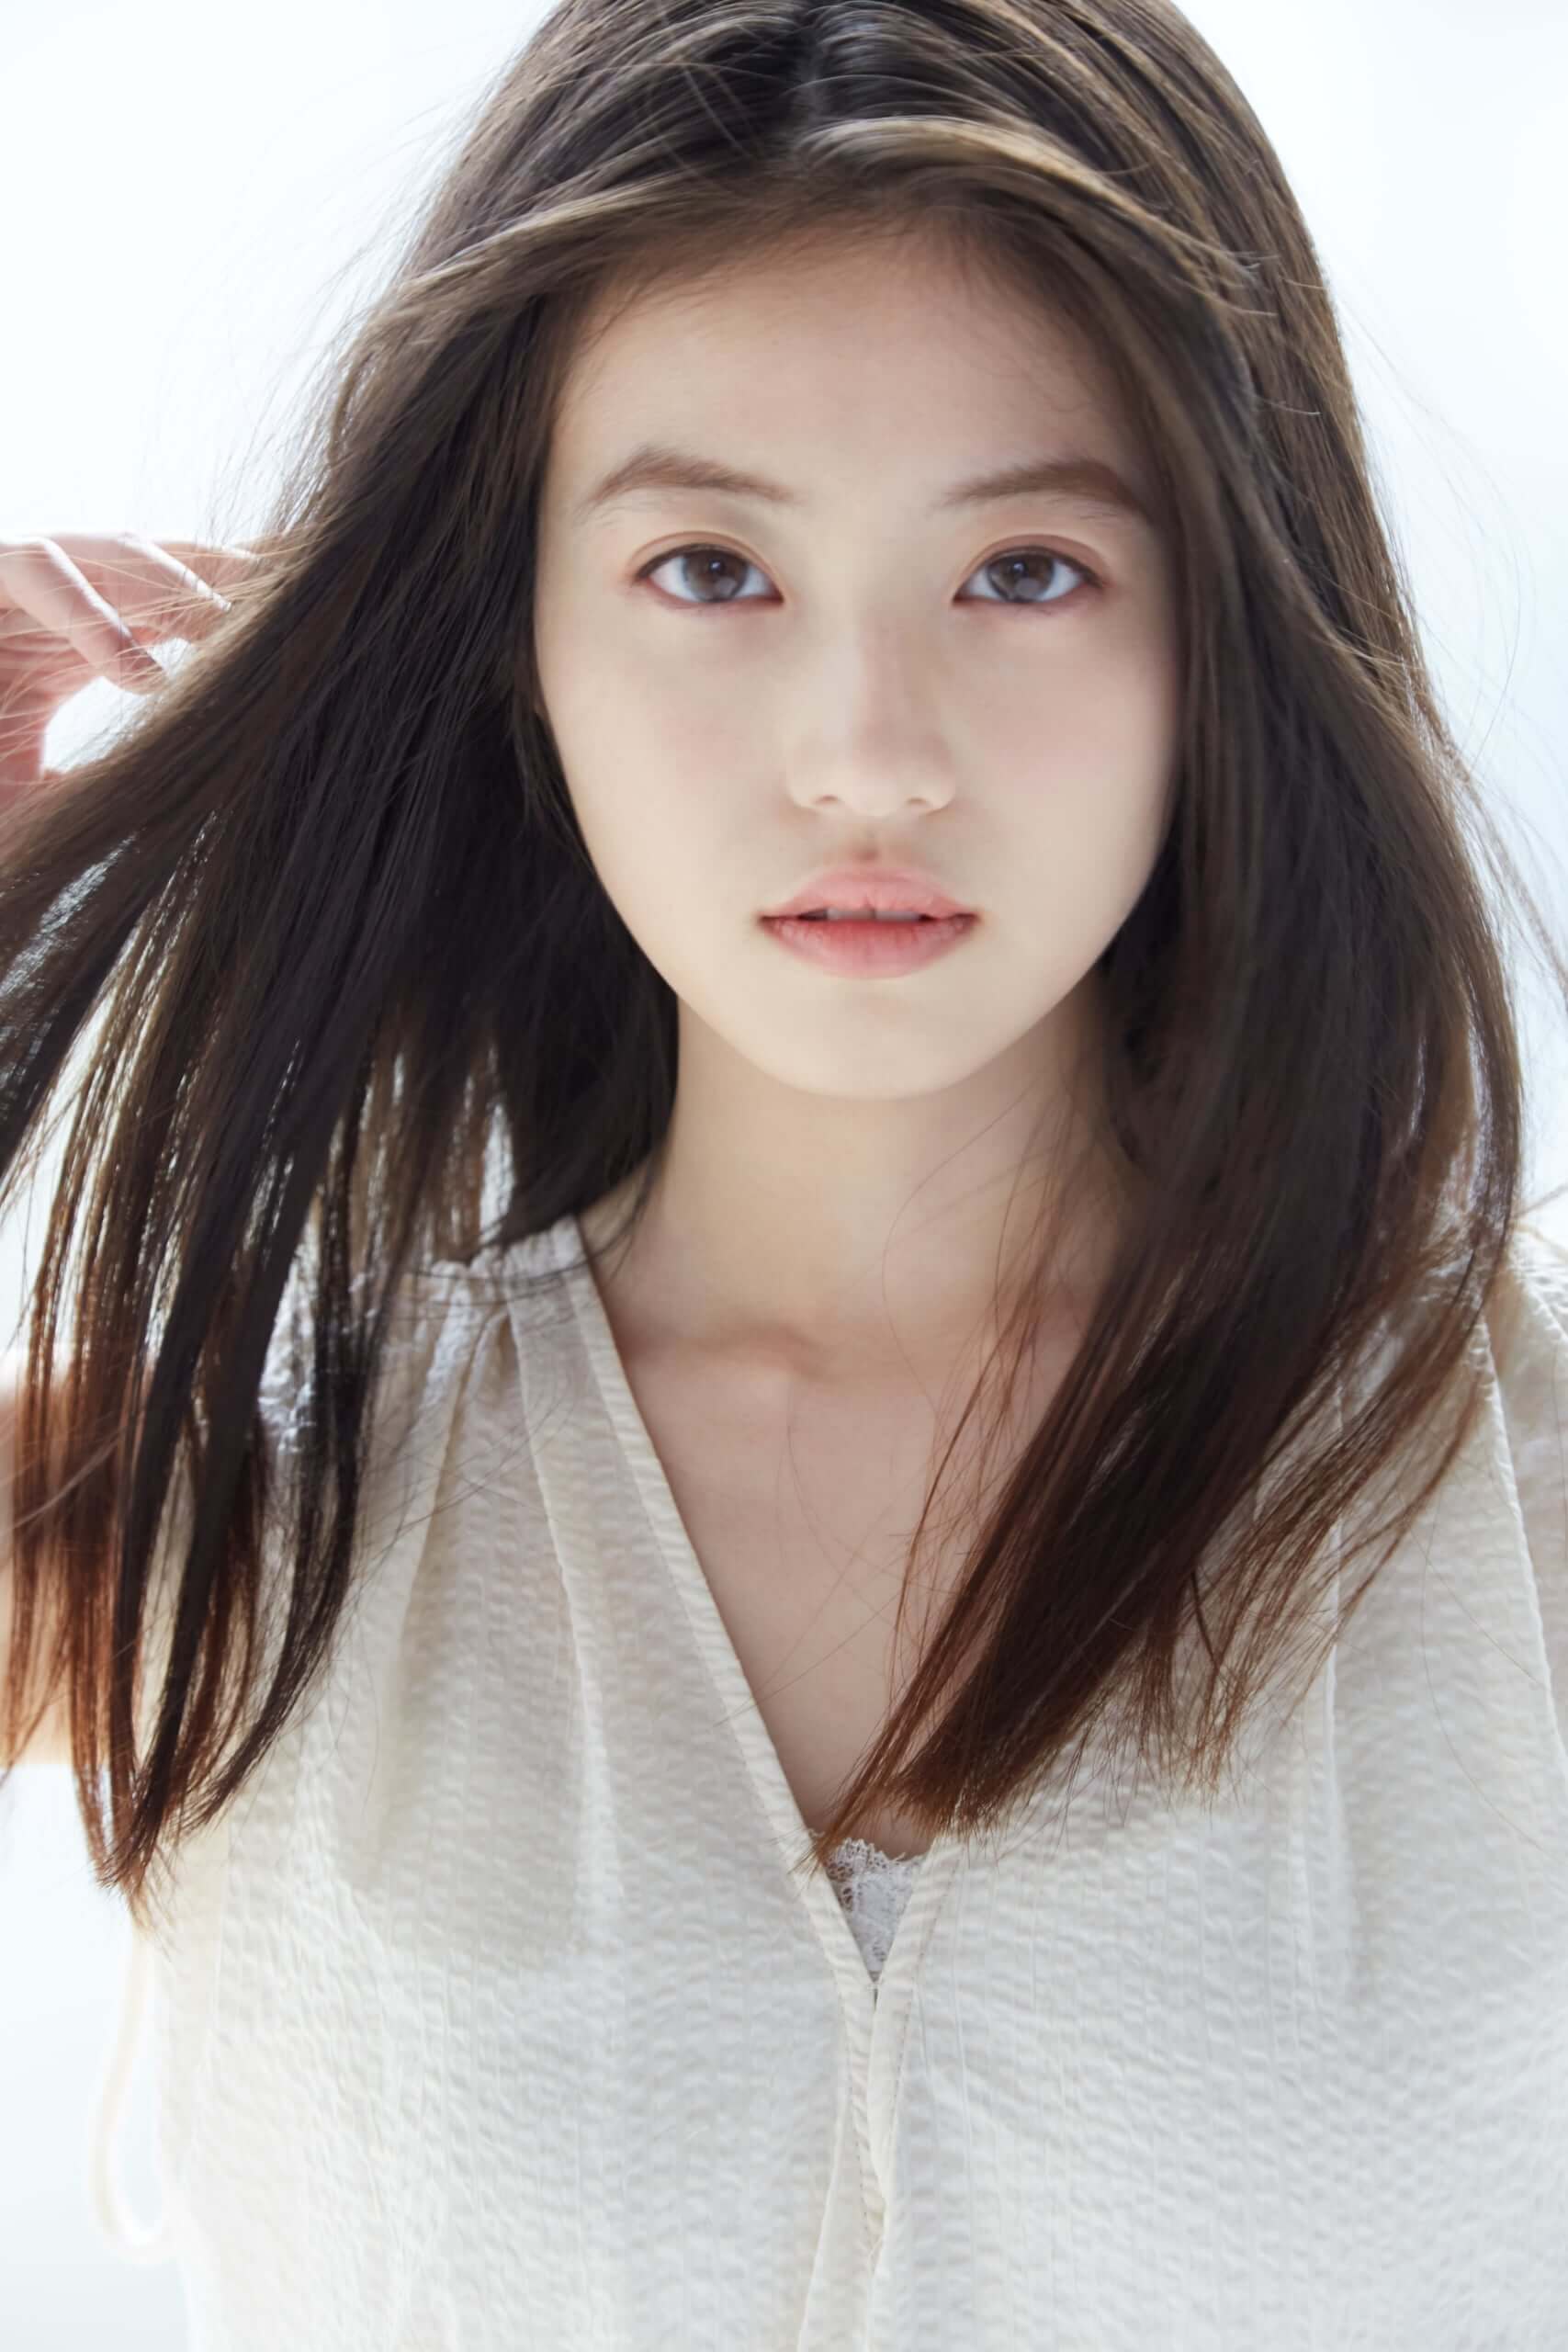 FASIO(ファシオ)のイメージキャラクターは女優の今田美桜サン